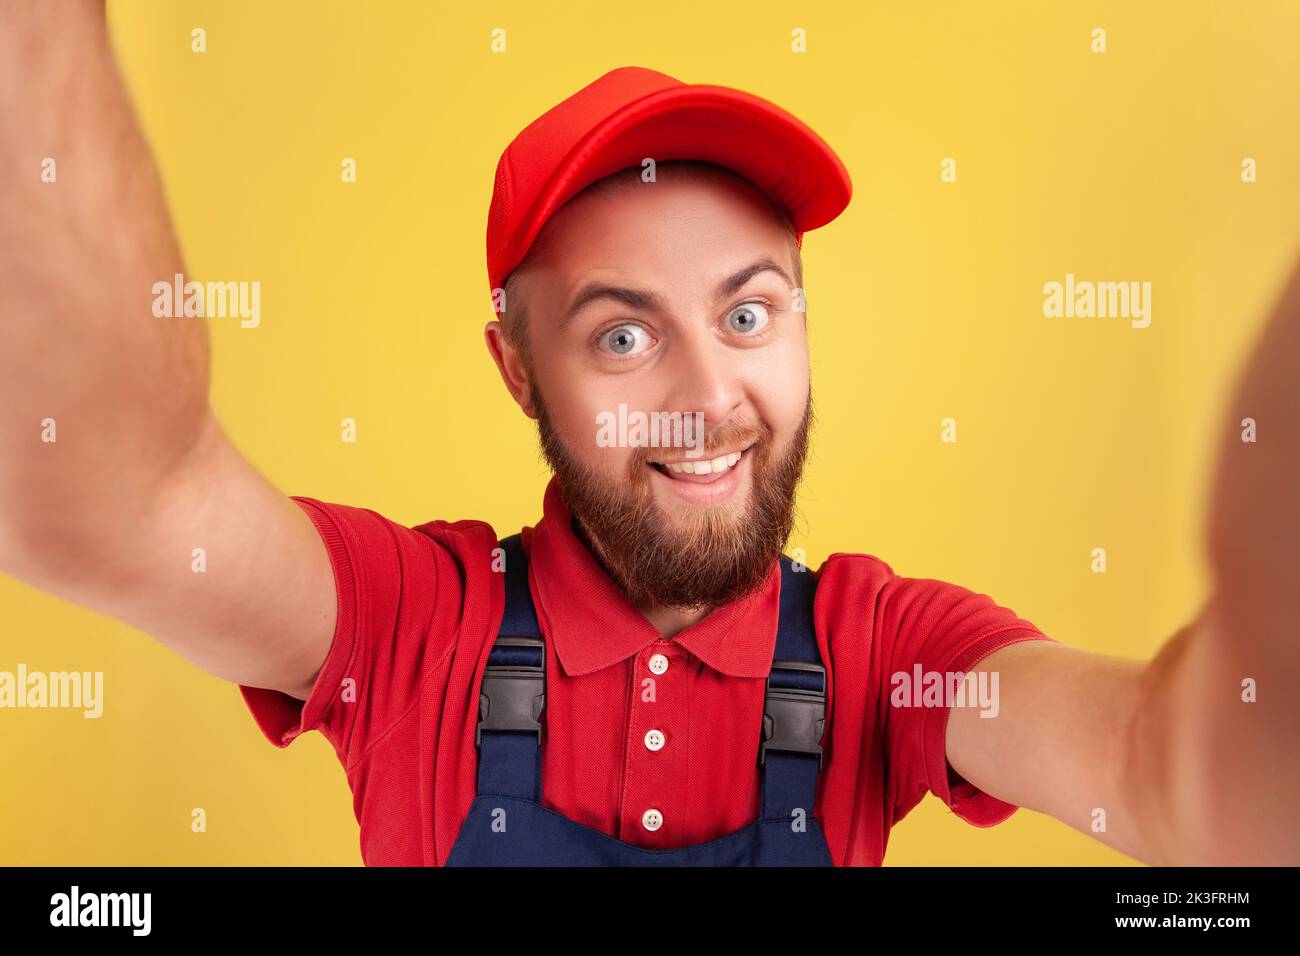 Optimista hombre feliz con el uso de gorra roja y el uniforme azul selfie,  mirando a cámara divertida expresión facial POV, punto de vista de la foto.  Estudio de interior grabado aislado